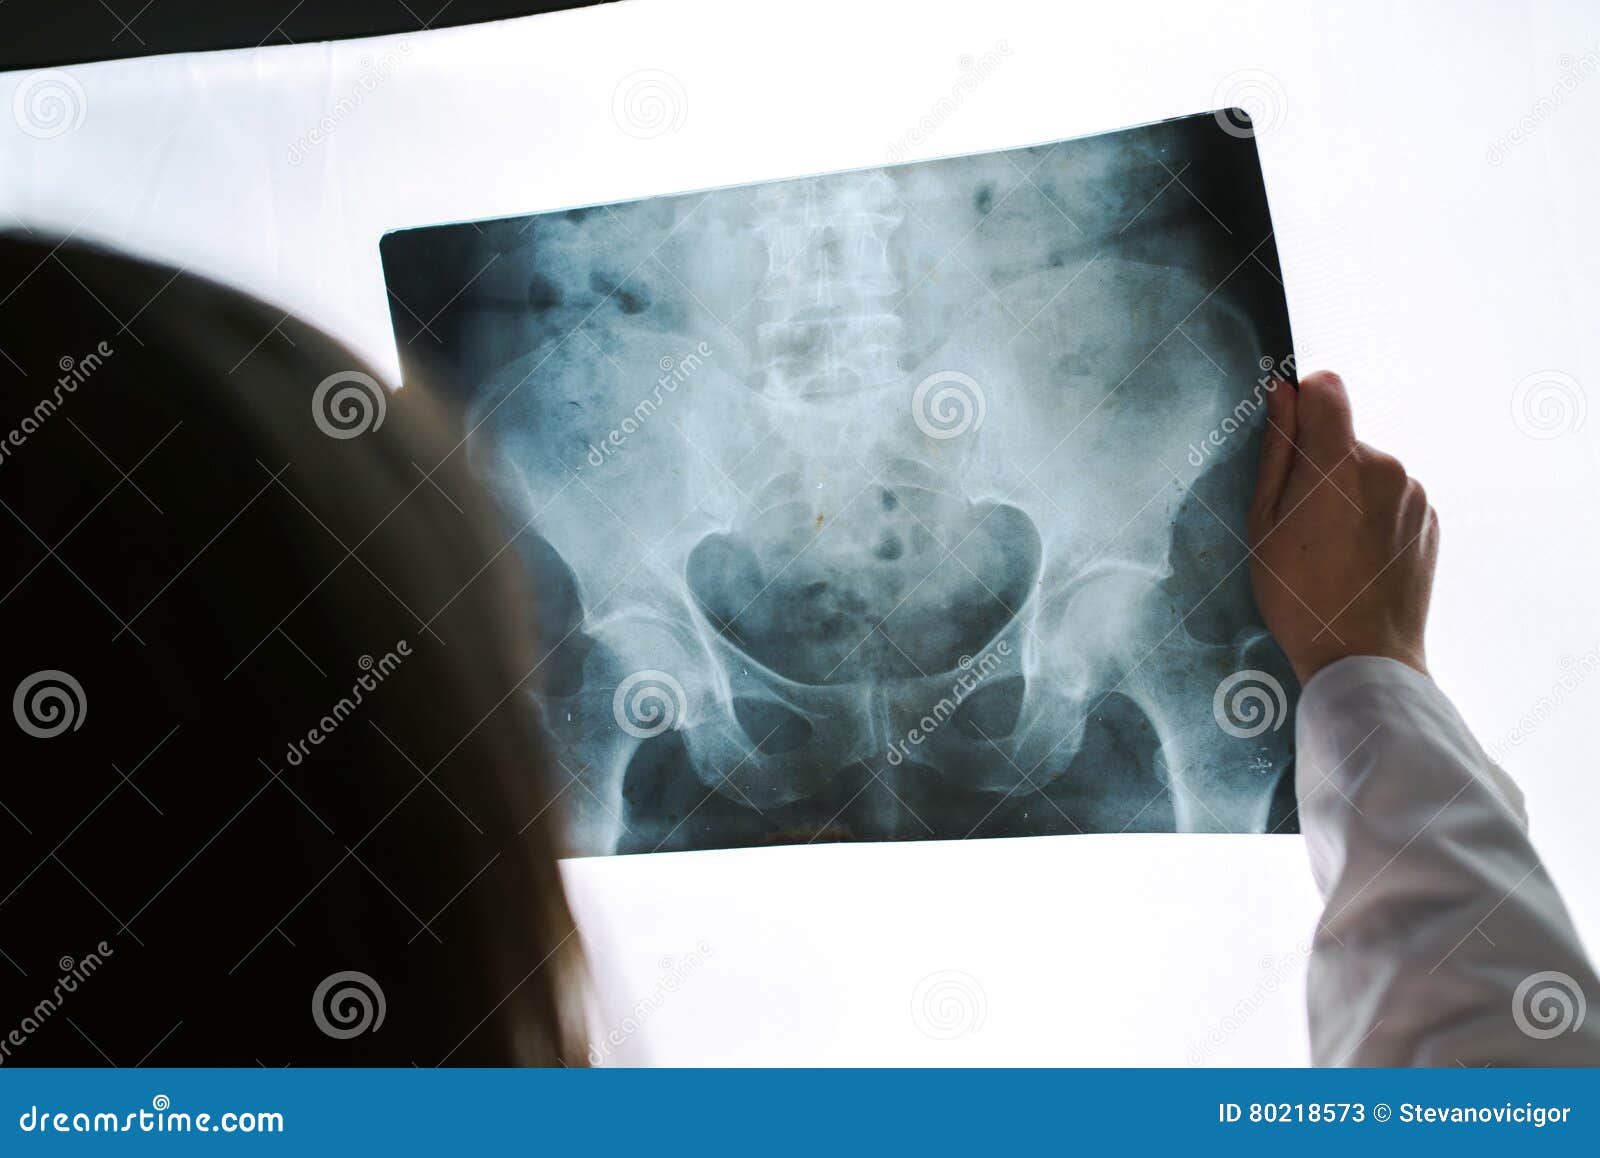 怎样读懂骨盆X线片 - 好医术早读文章 - 好医术-赋能医生守护生命